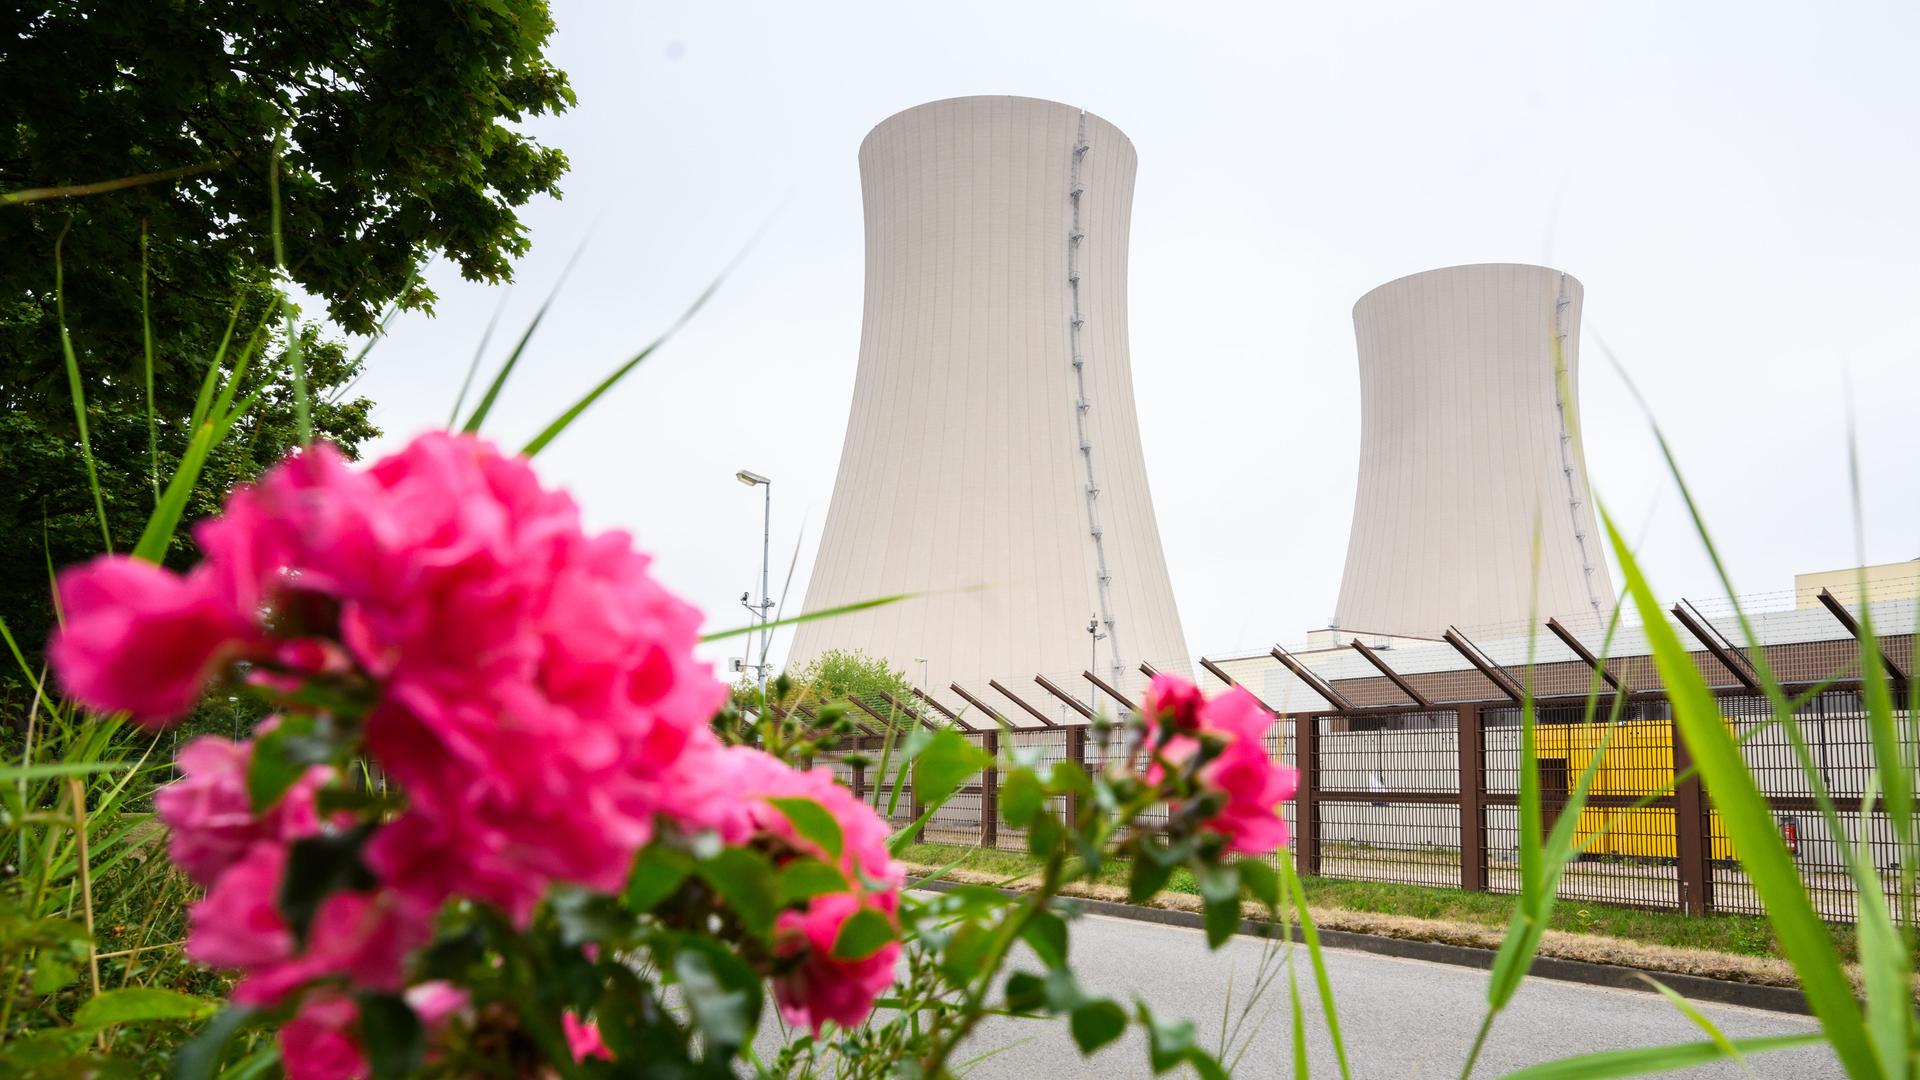 Rosen wachsen am stillgelegten Atomkraftwerk Grohnde. CDU und FDP werben sowohl auf Bundes- als auch auf Landesebene in Niedersachsen für eine weitere Nutzung der Atomkraft. SPD und Grüne in Niedersachsen warnen davor, den Atomausstieg grundsätzlich in Frage zu stellen. Experten gehen davon aus, dass die drei Ende 2021 abgeschalteten Atommeiler - zu denen auch das AKW Grohnde gehört - innerhalb von Monaten wieder in Betrieb gehen könnten.